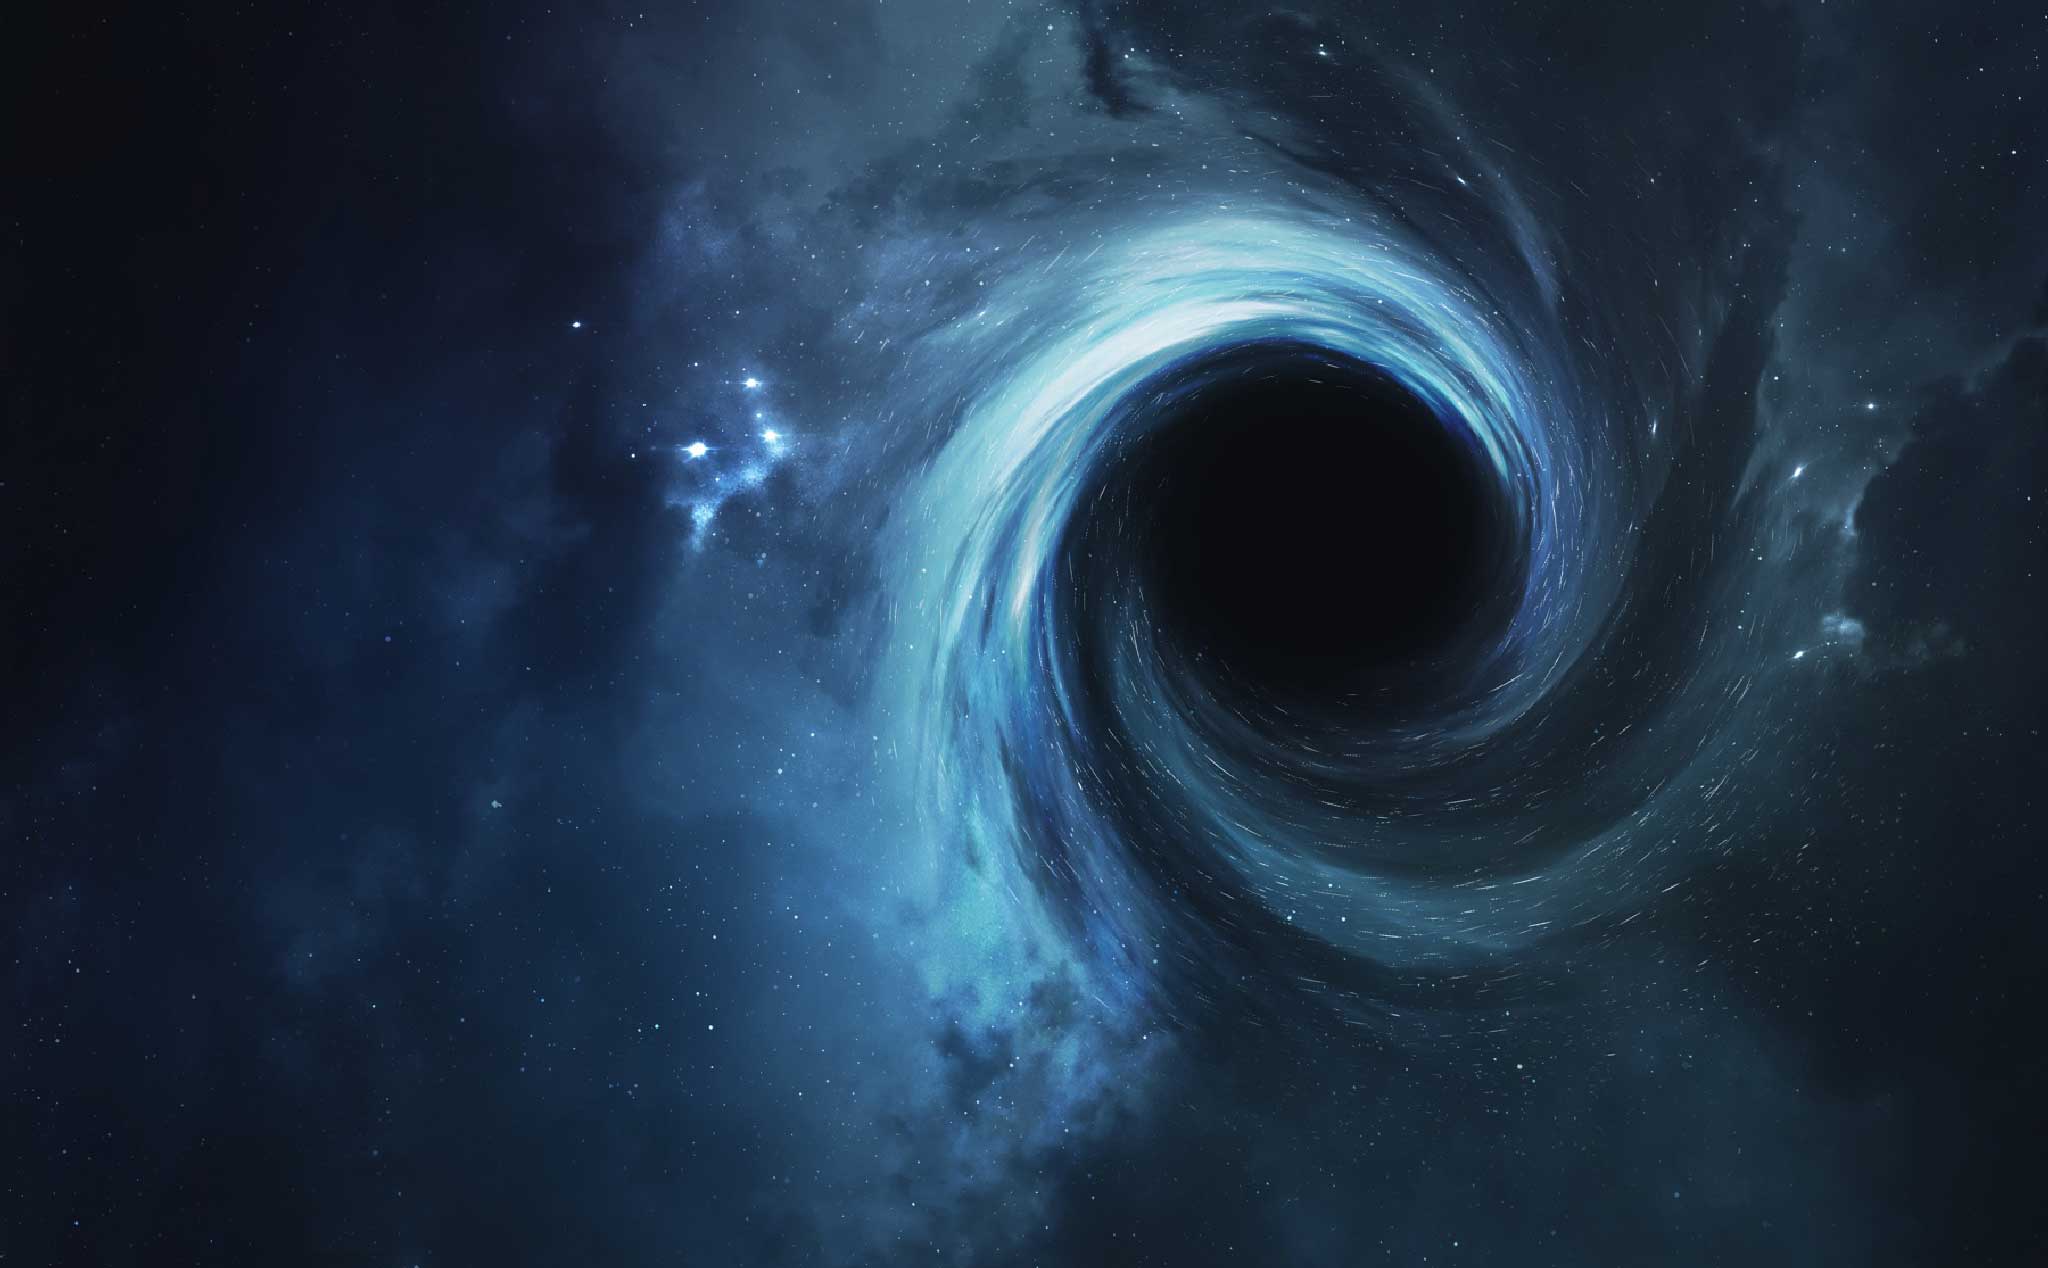 Phát hiện lỗ đen: Sự phát hiện lỗ đen đã làm thay đổi chúng ta về cách hiểu vũ trụ. Với khả năng hút kết cấu và ánh sáng, lỗ đen là một trong những thủy triều mạnh mẽ nhất trong vũ trụ. Hãy đến với chúng tôi và tìm hiểu thêm về phát hiện này.